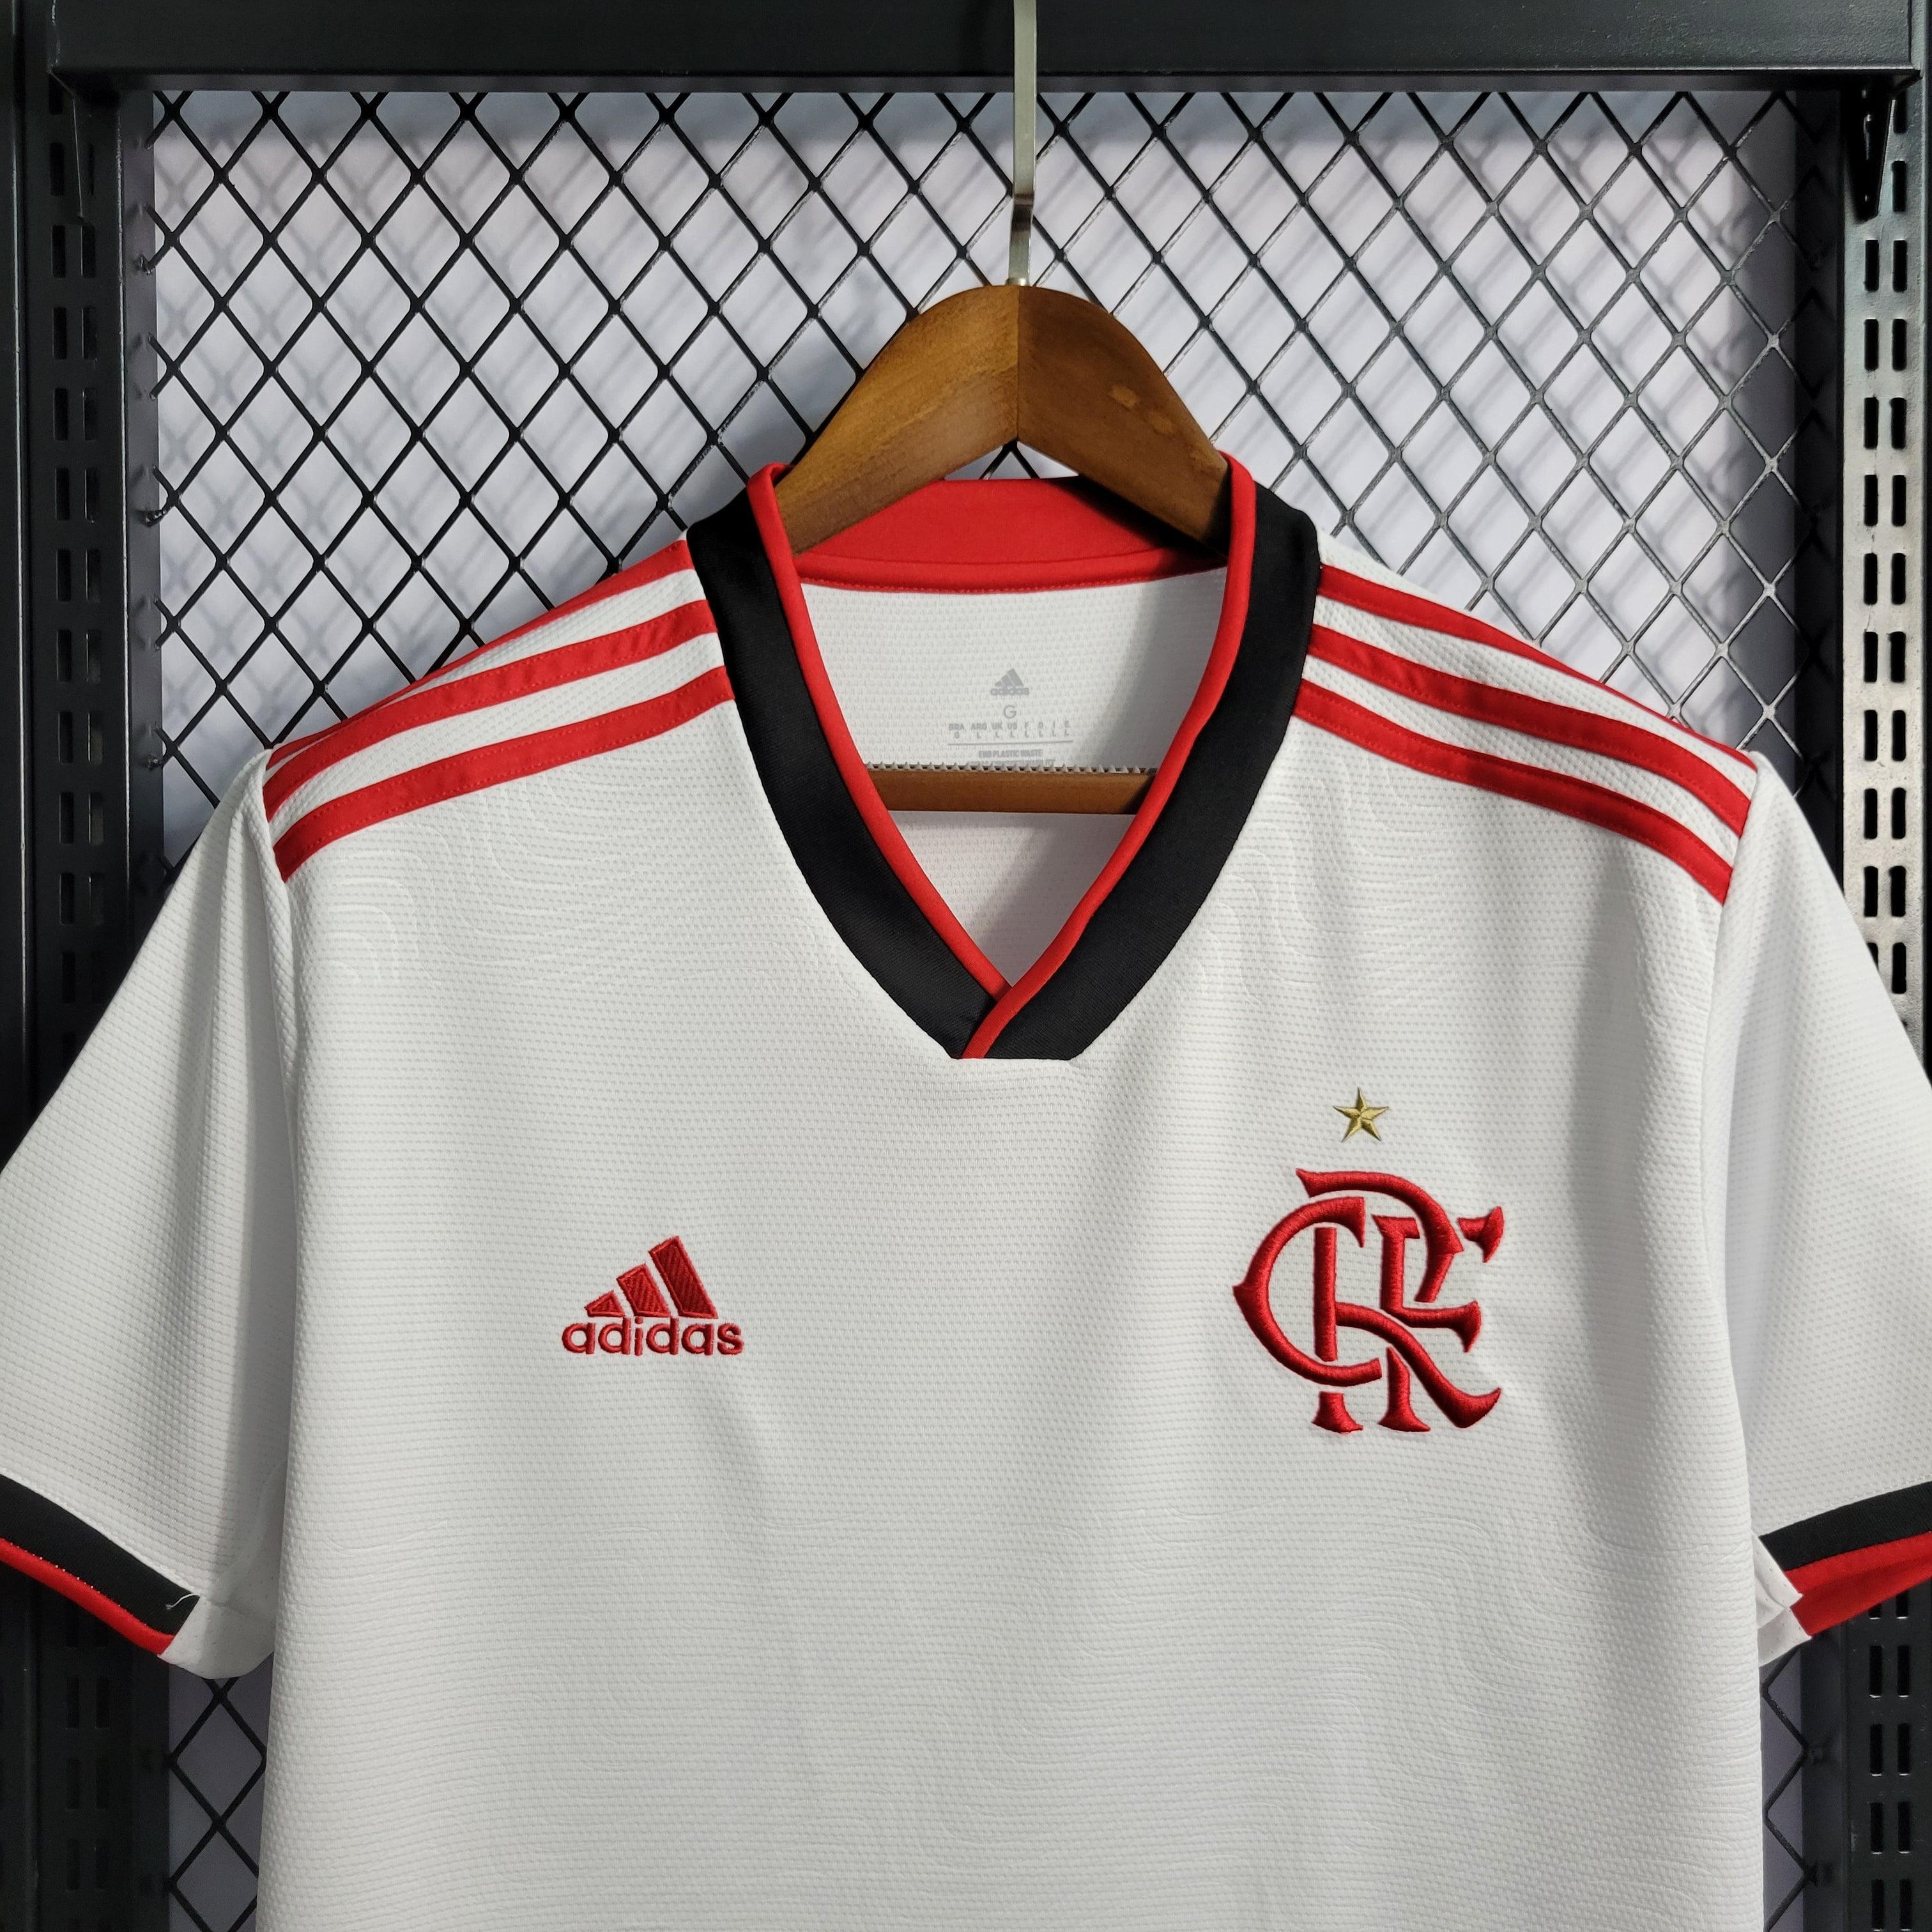 Novos Produtos do Flamengo no Outlet da Adidas!